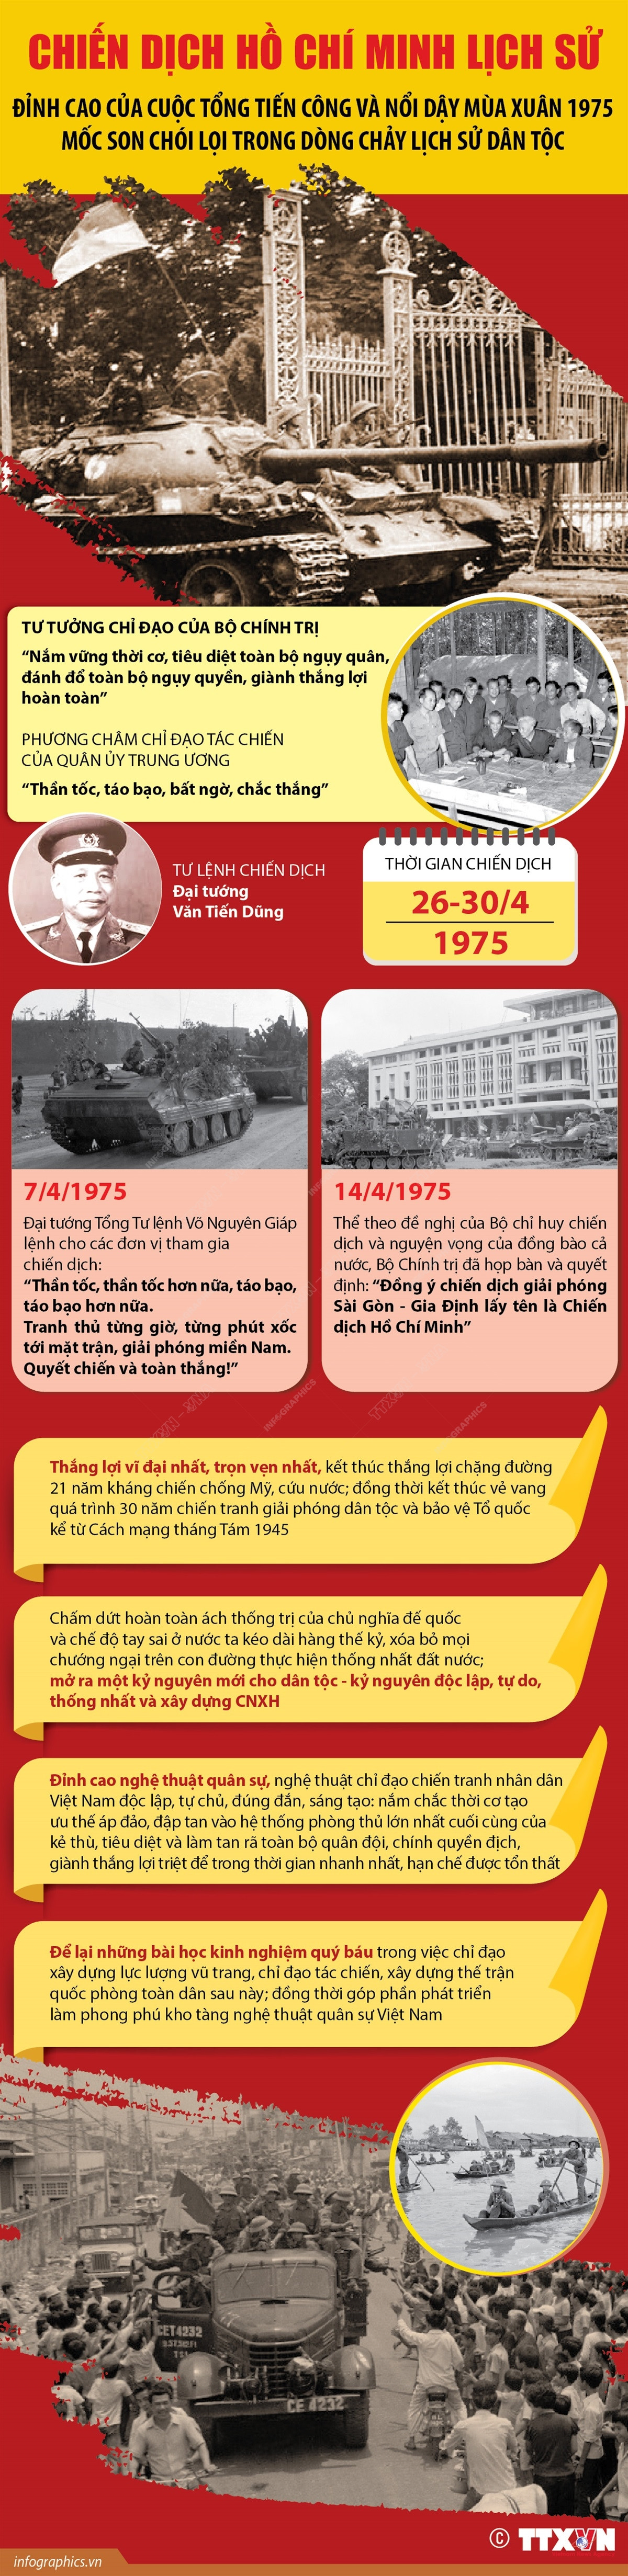 Chiến dịch Hồ Chí Minh: Biểu tượng của chủ nghĩa anh hùng cách mạng và đại đoàn kết dân tộc - Ảnh 10.